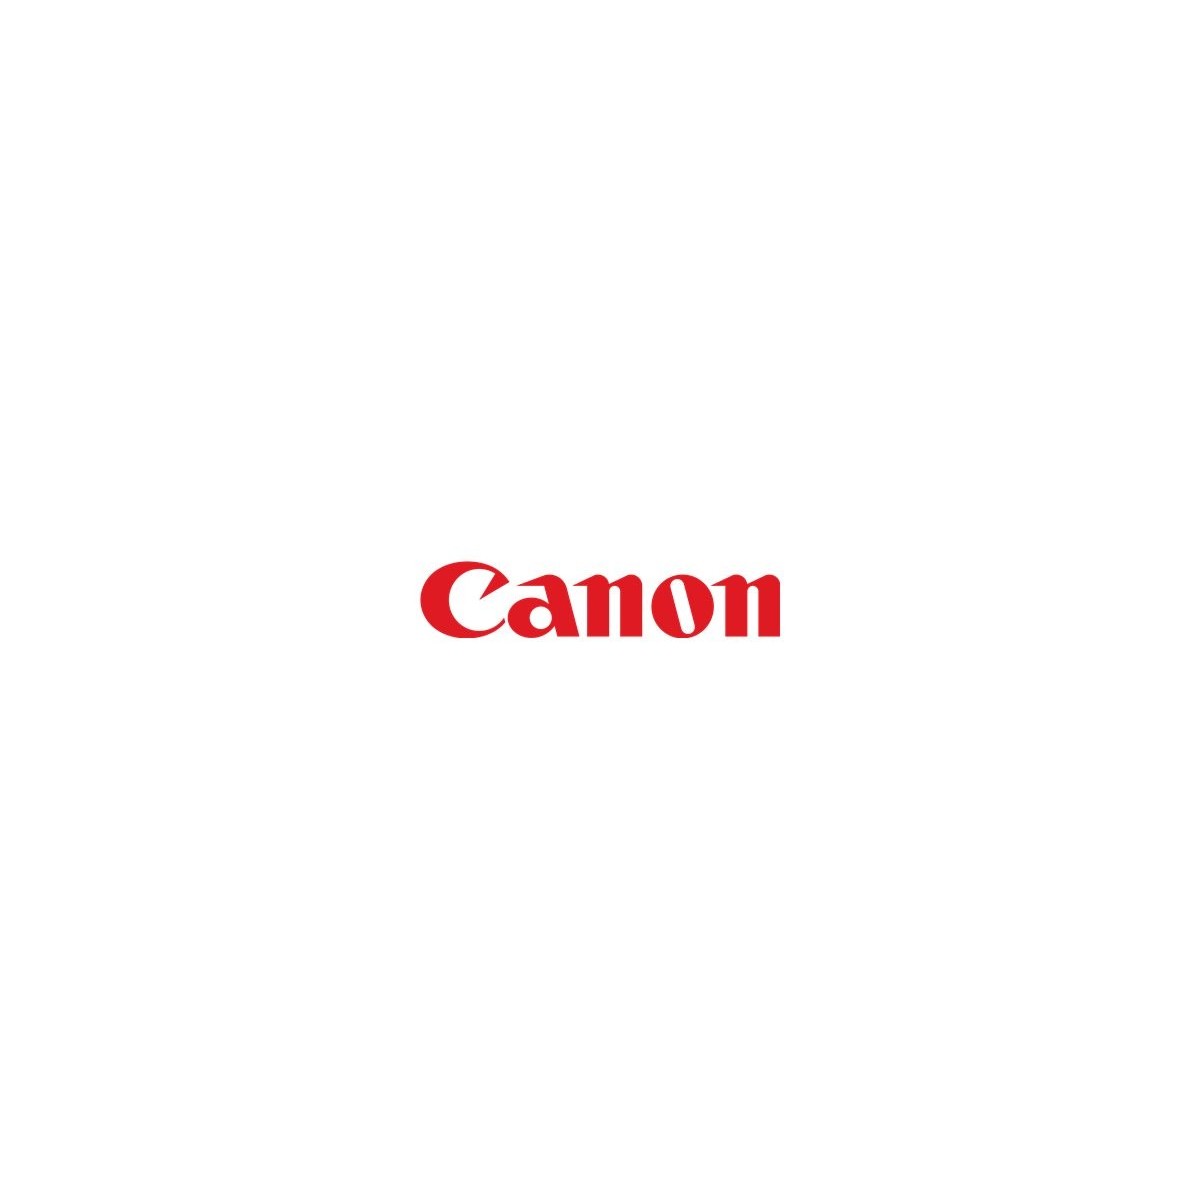 Canon QM3-7018-030 - 1 pc(s)